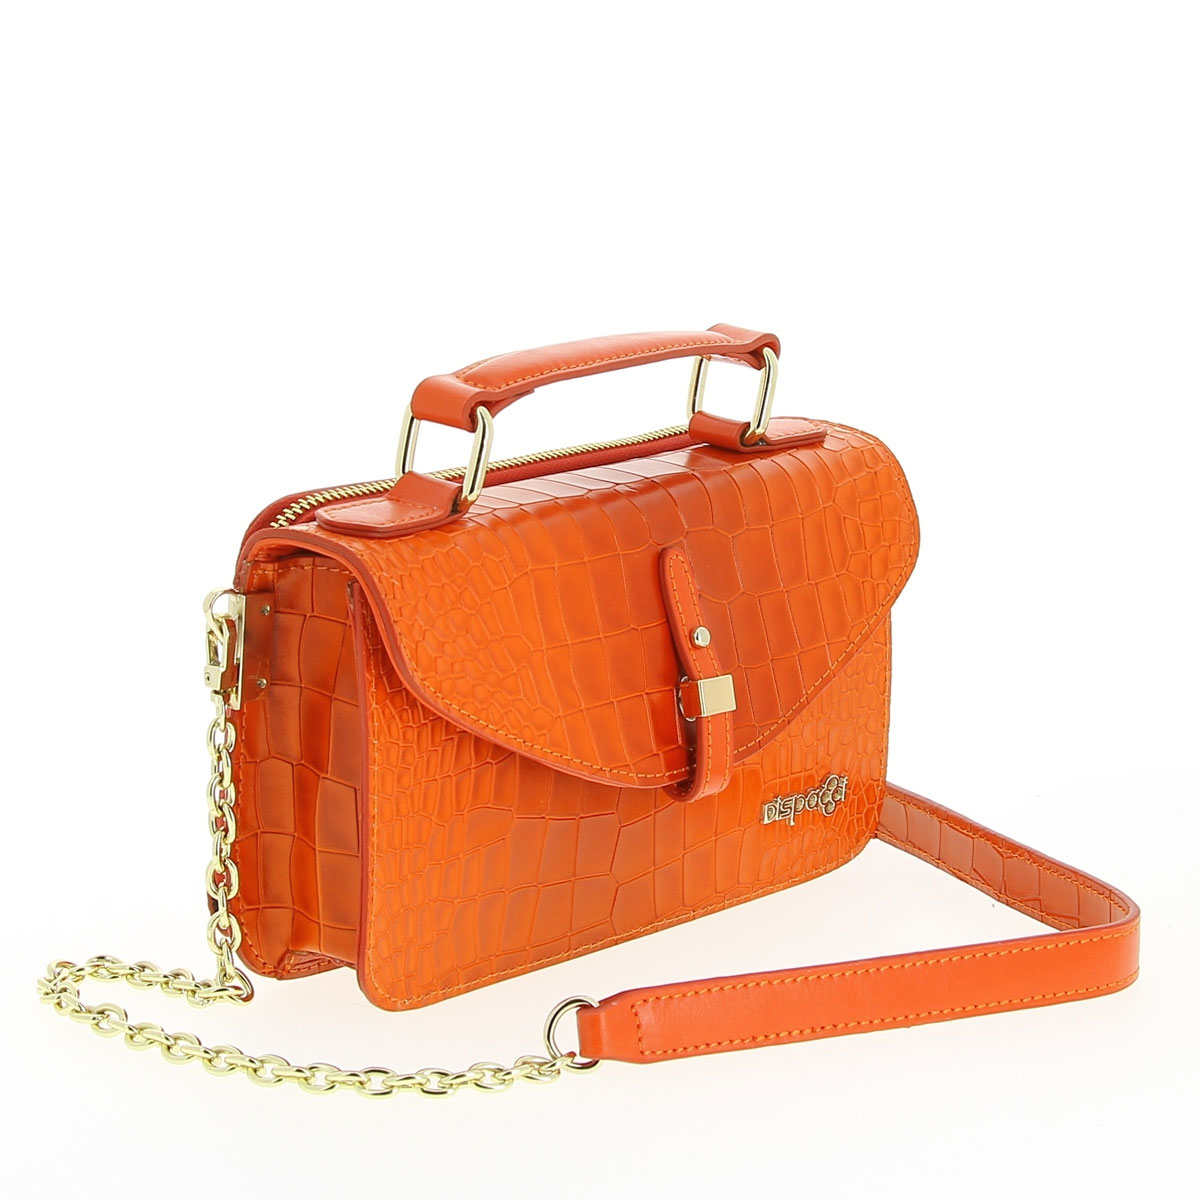 Сумка женская "Dispacci", цвет: оранжевый. Т3191-1 - купить фирменную сумку по доступной цене с доставкой на дом в интернет магазине OZON.ru